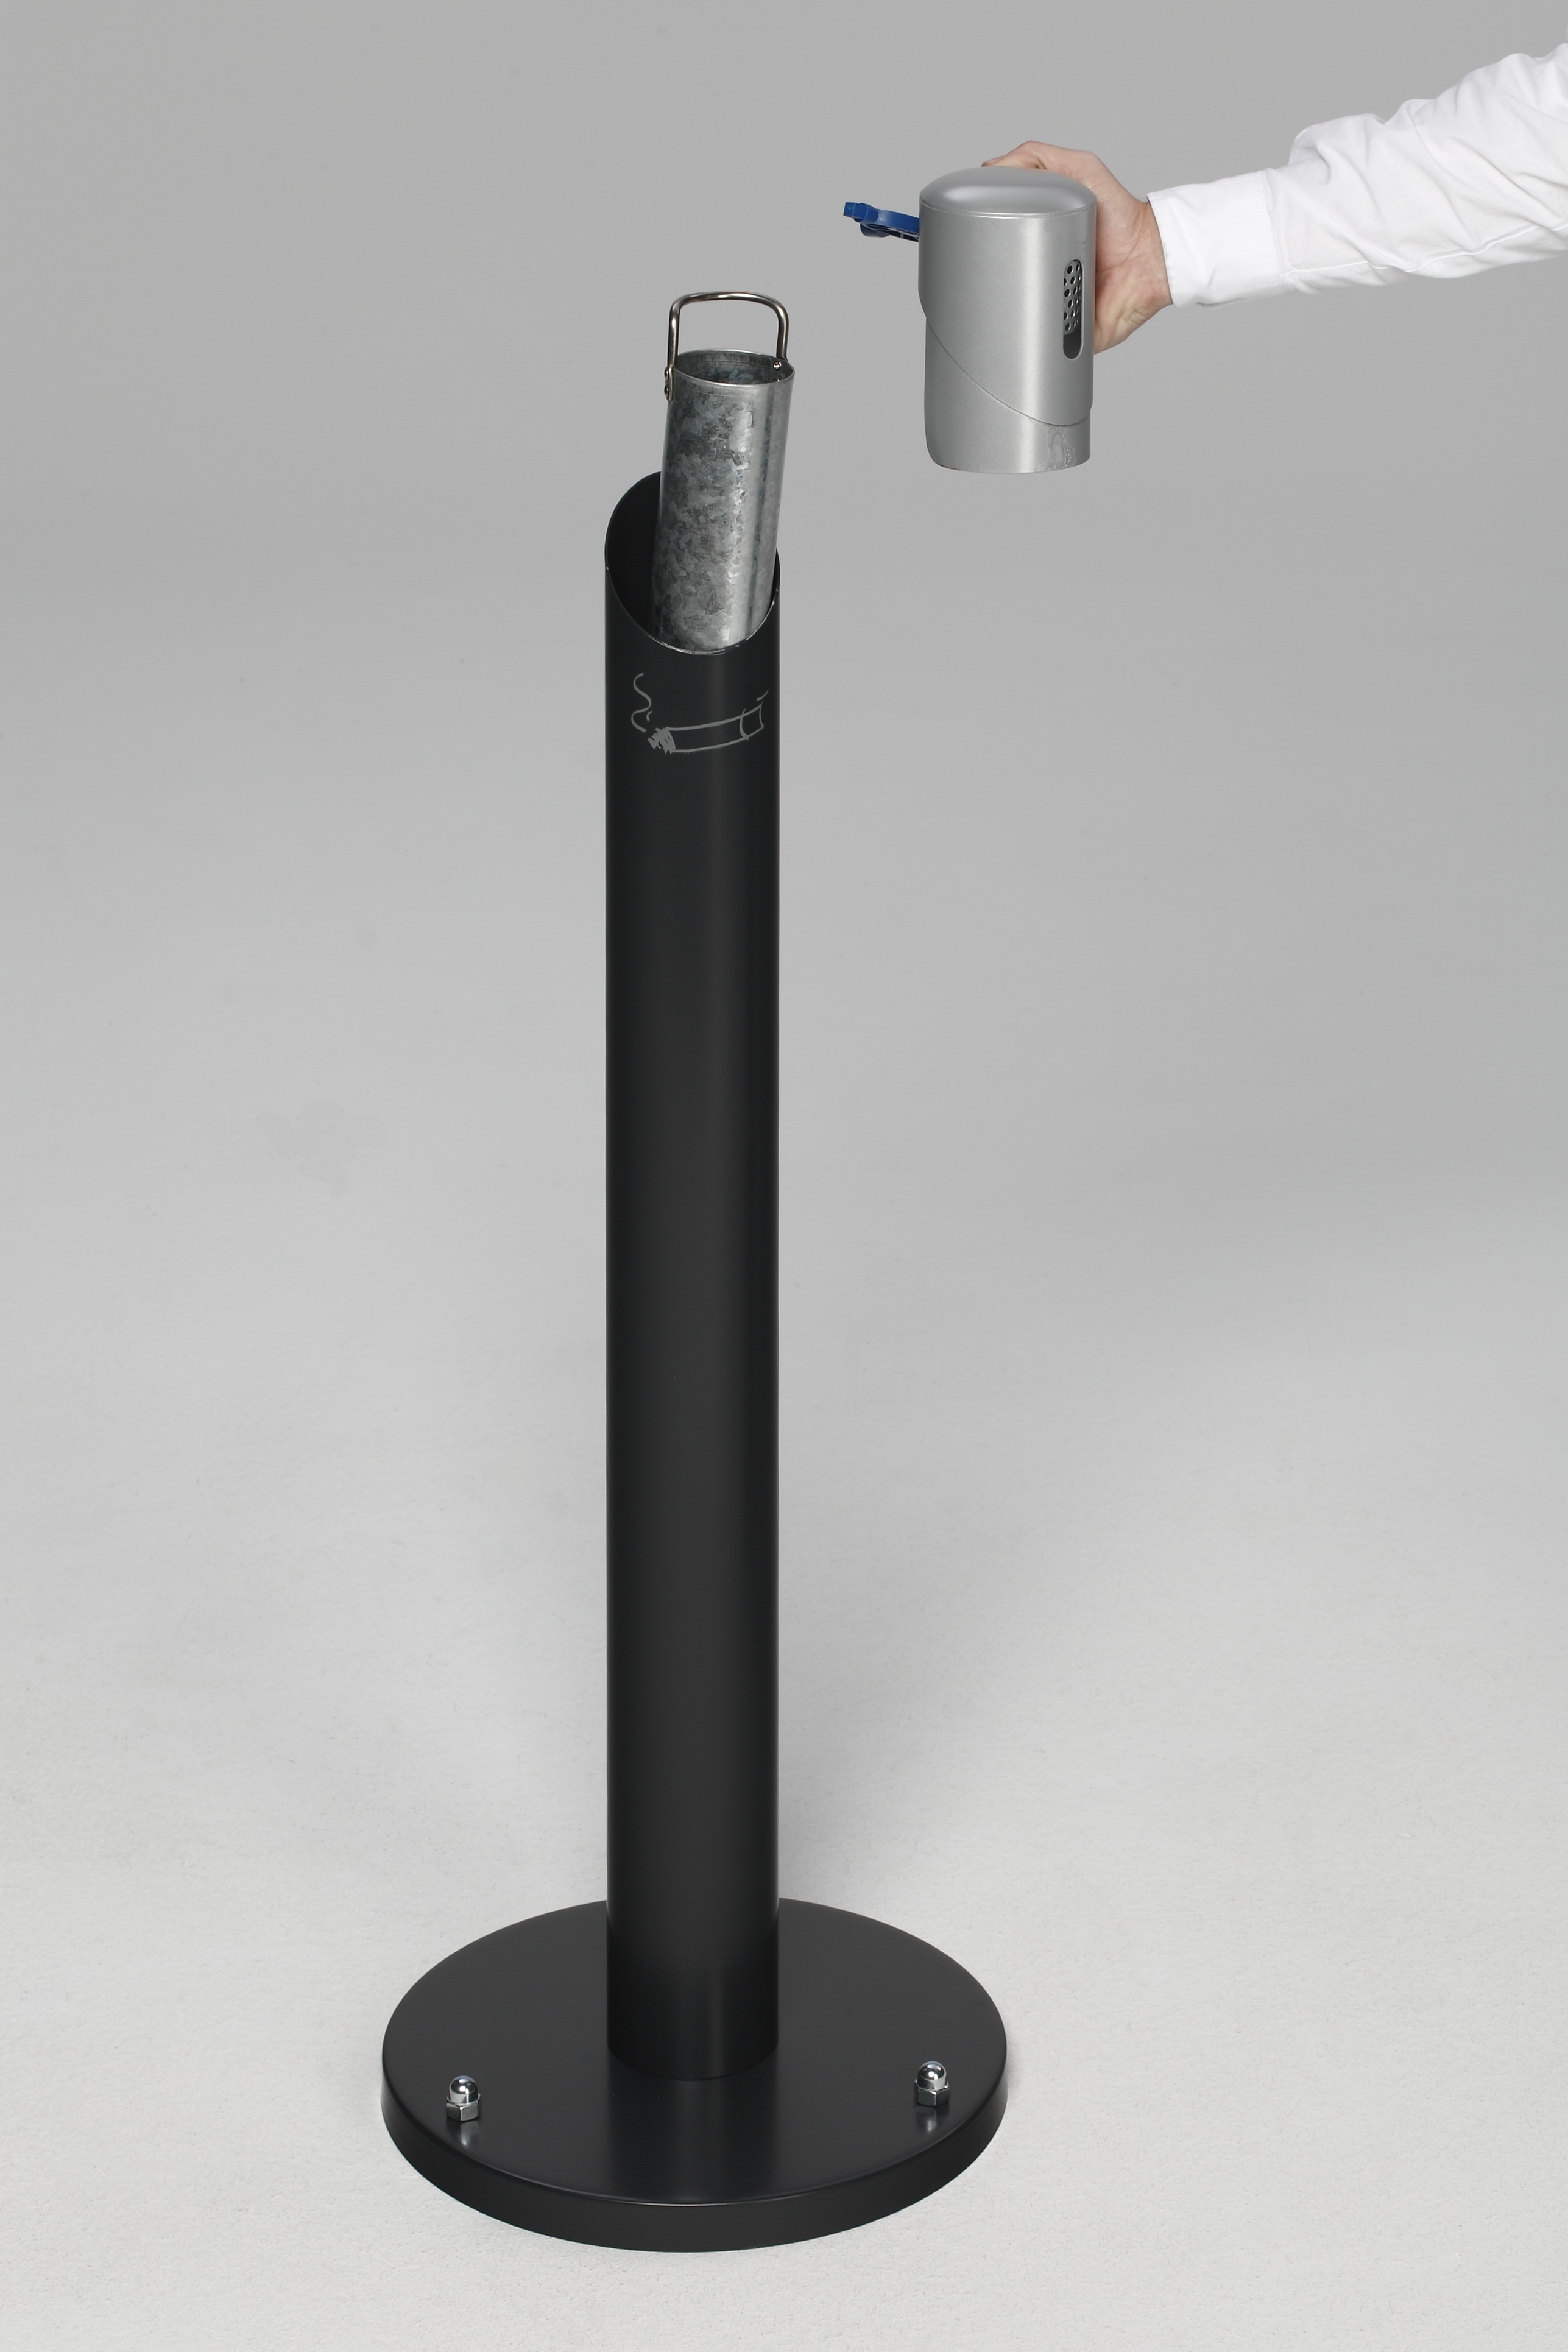 Runder Ascher Standsäule mit abnehmbarem Kopfteil | 9,4 Liter, HxBxT 100,5x36,5x36,5cm | Verzinkter Stahl | Anthrazit